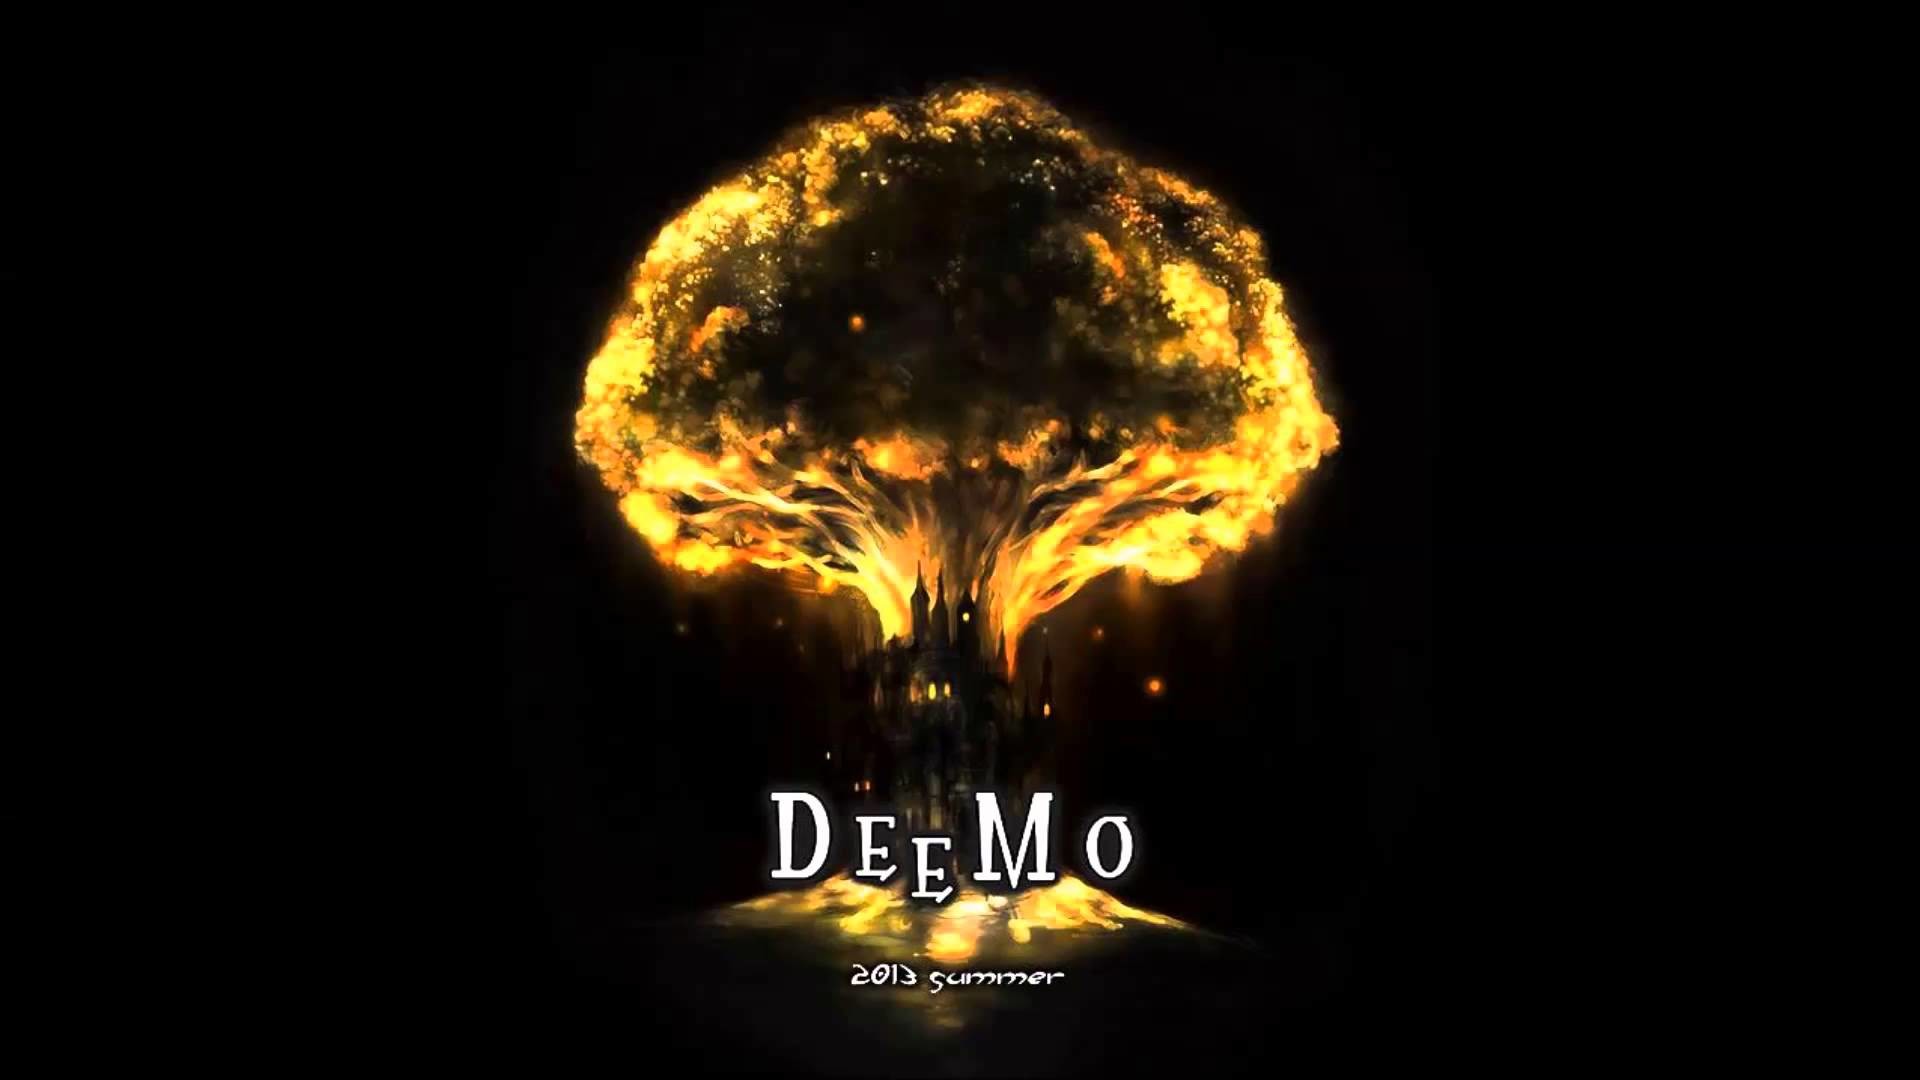 1920x1080 ãä½æ¥­ç¨BGMã Deemo Music Collection 2ãHDã - YouTube